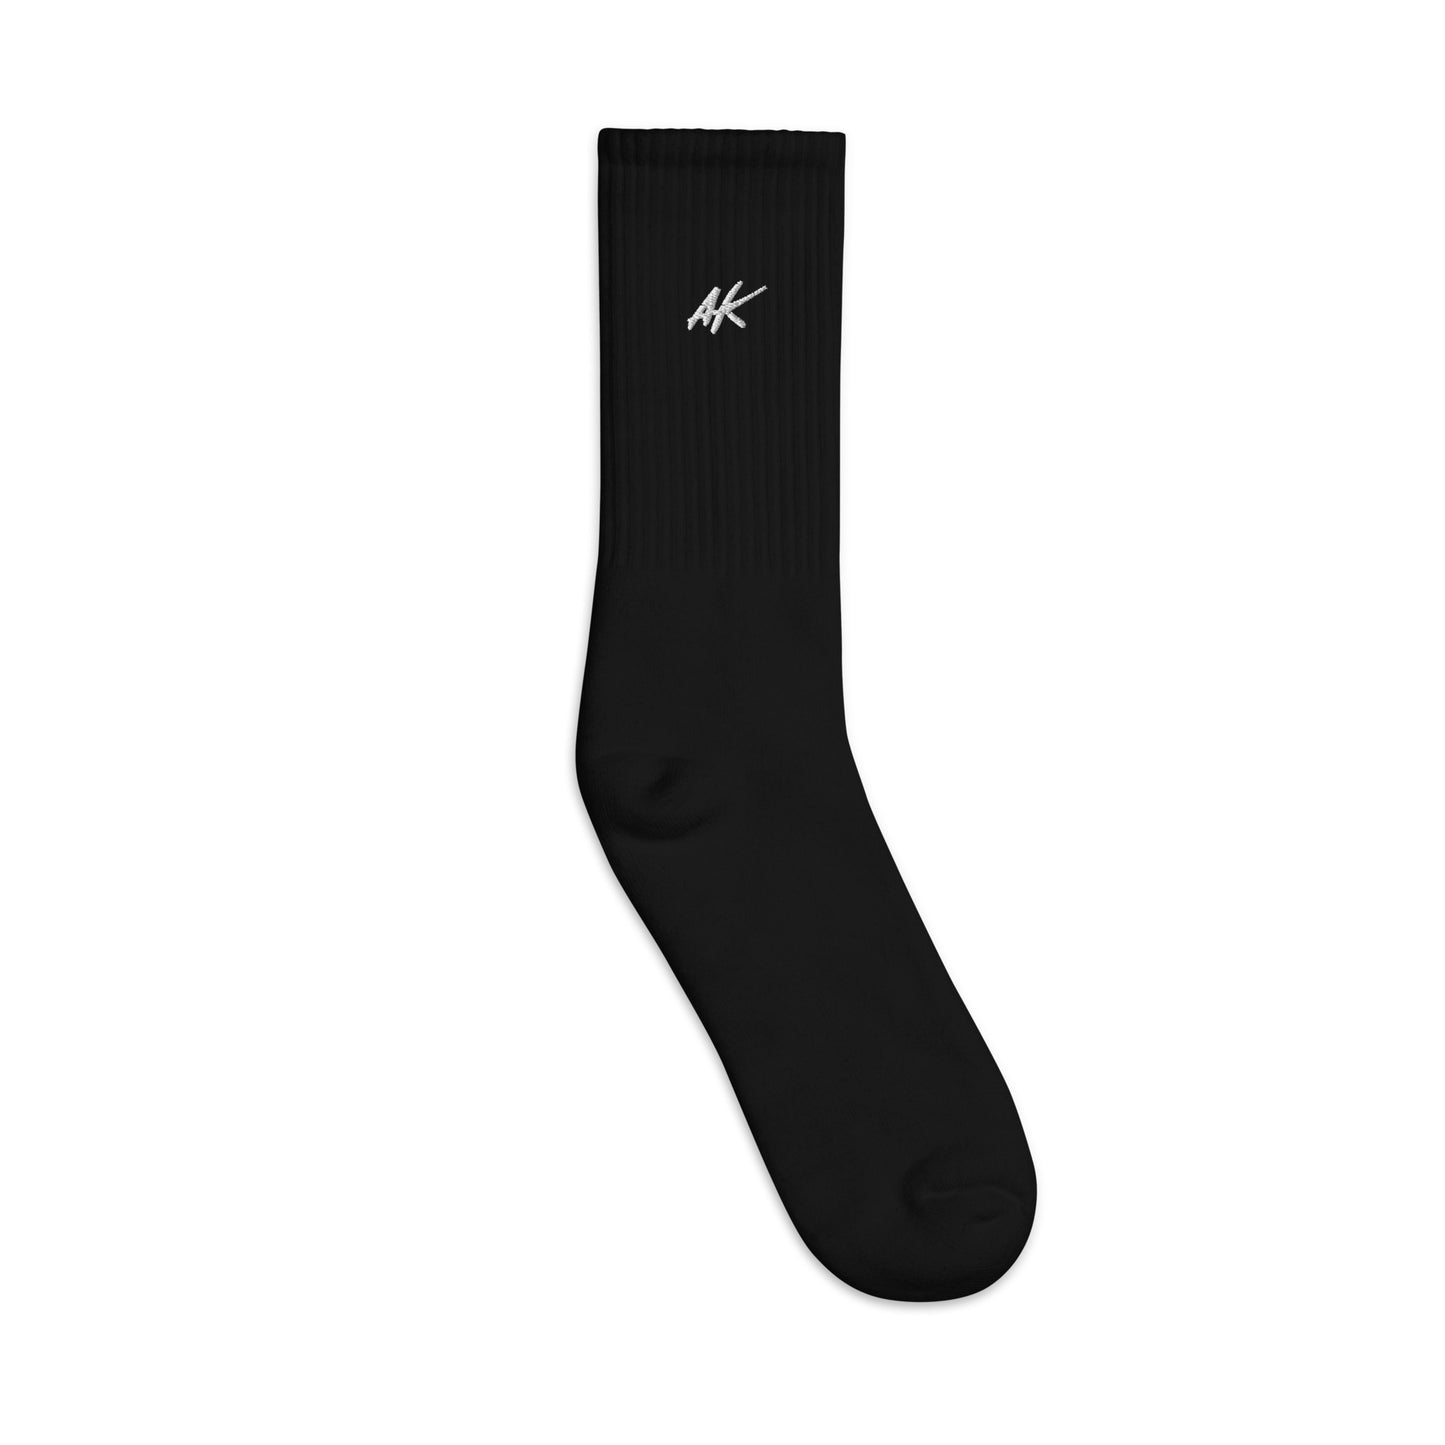 AK socks (white)